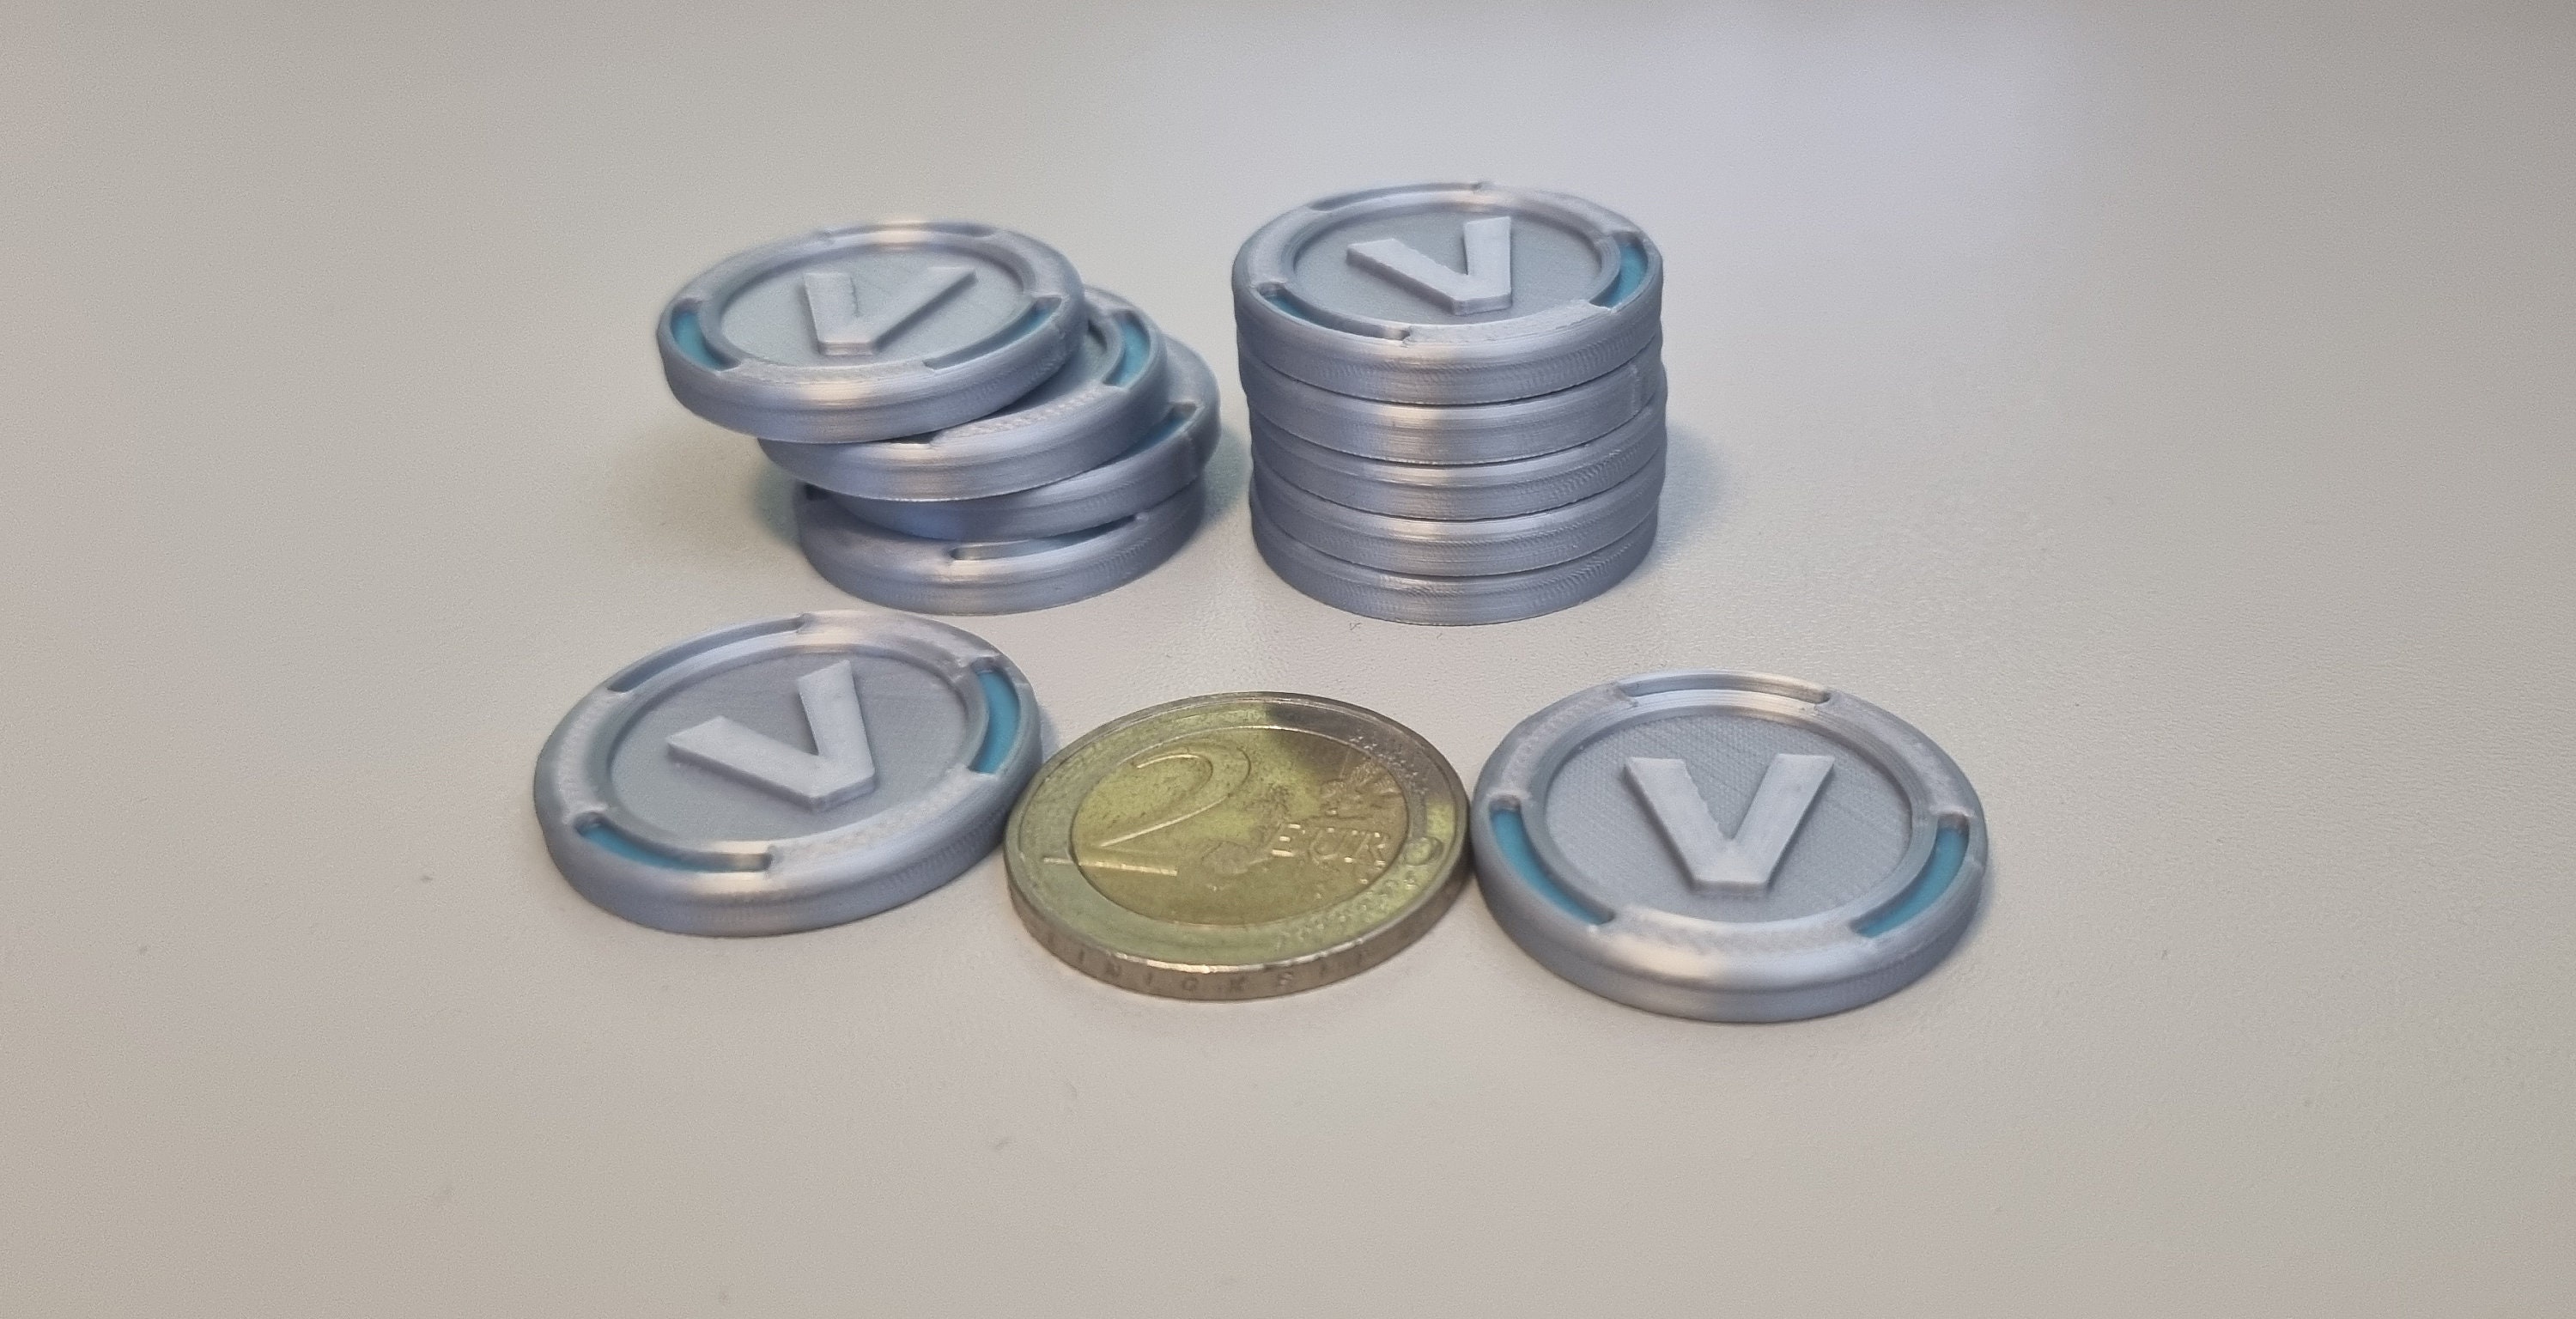 Vbuck Coin 